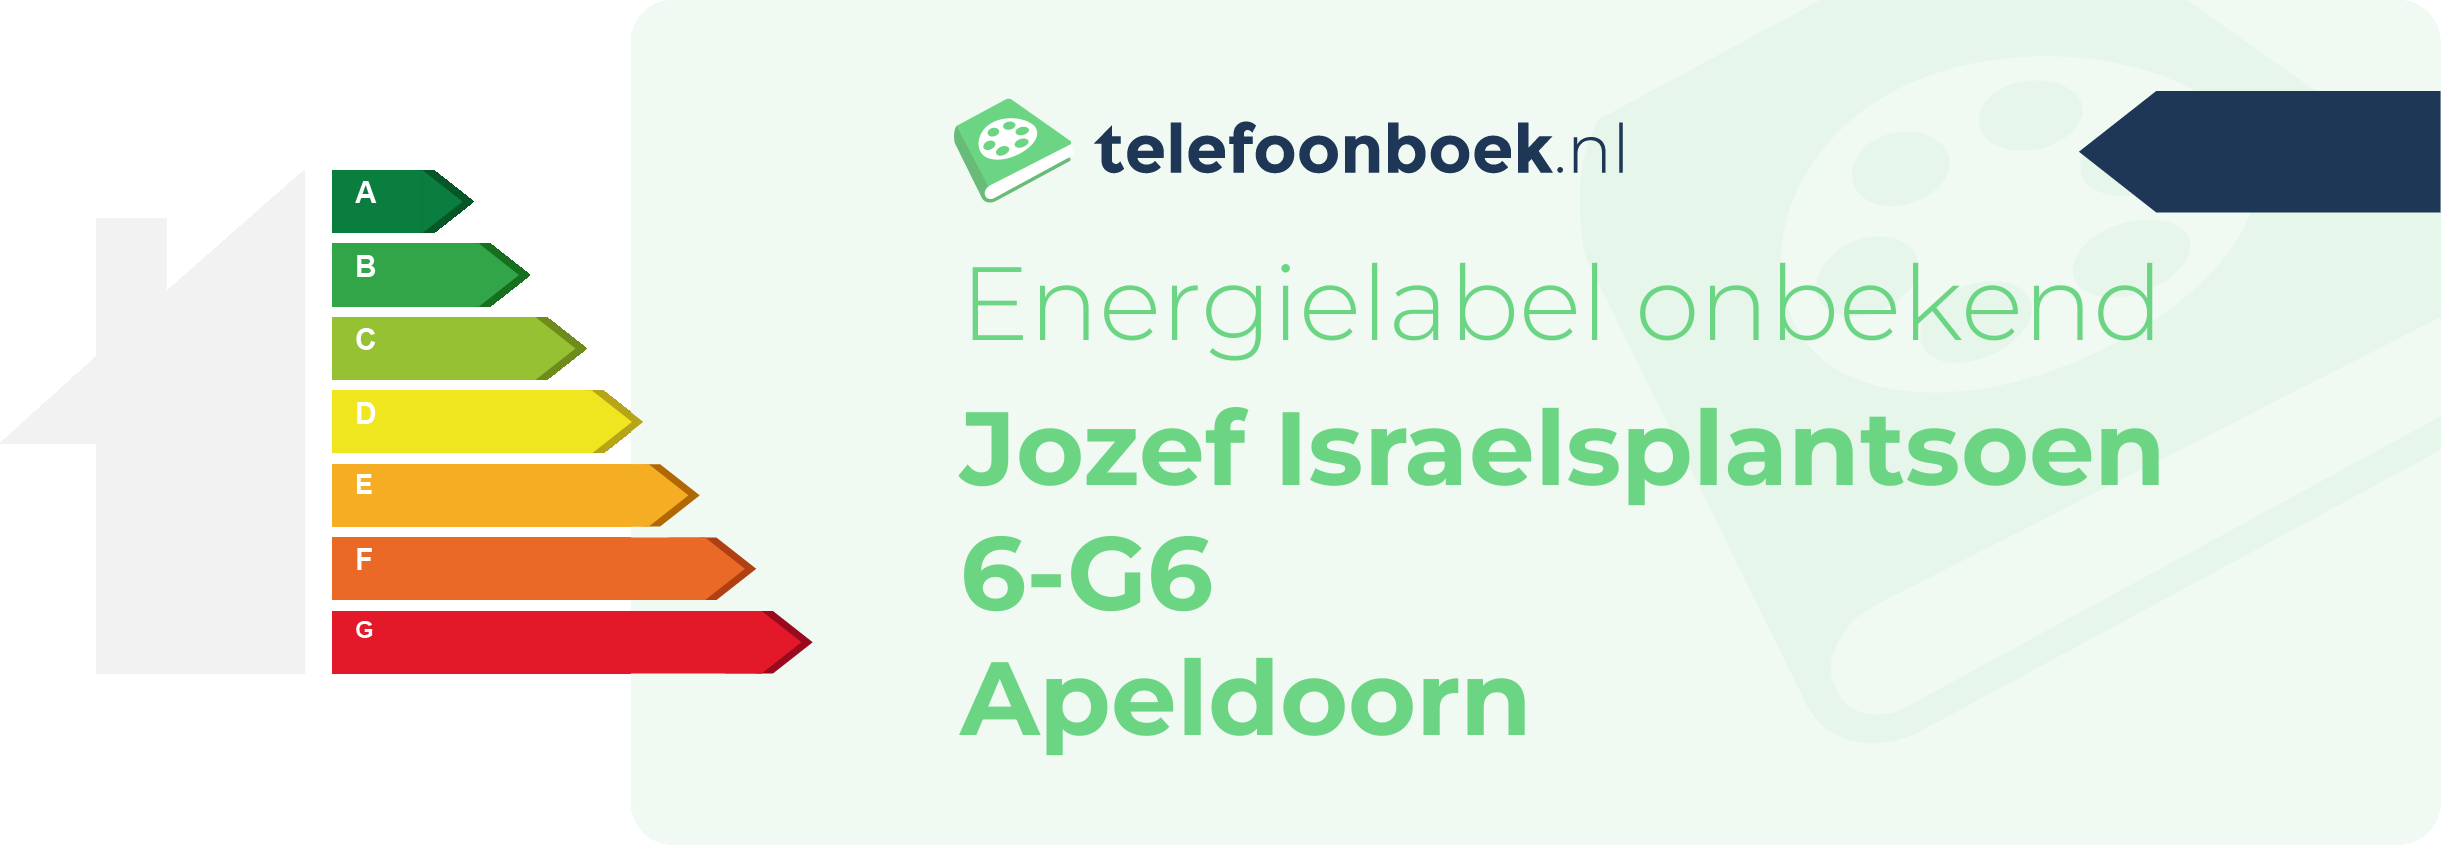 Energielabel Jozef Israelsplantsoen 6-G6 Apeldoorn